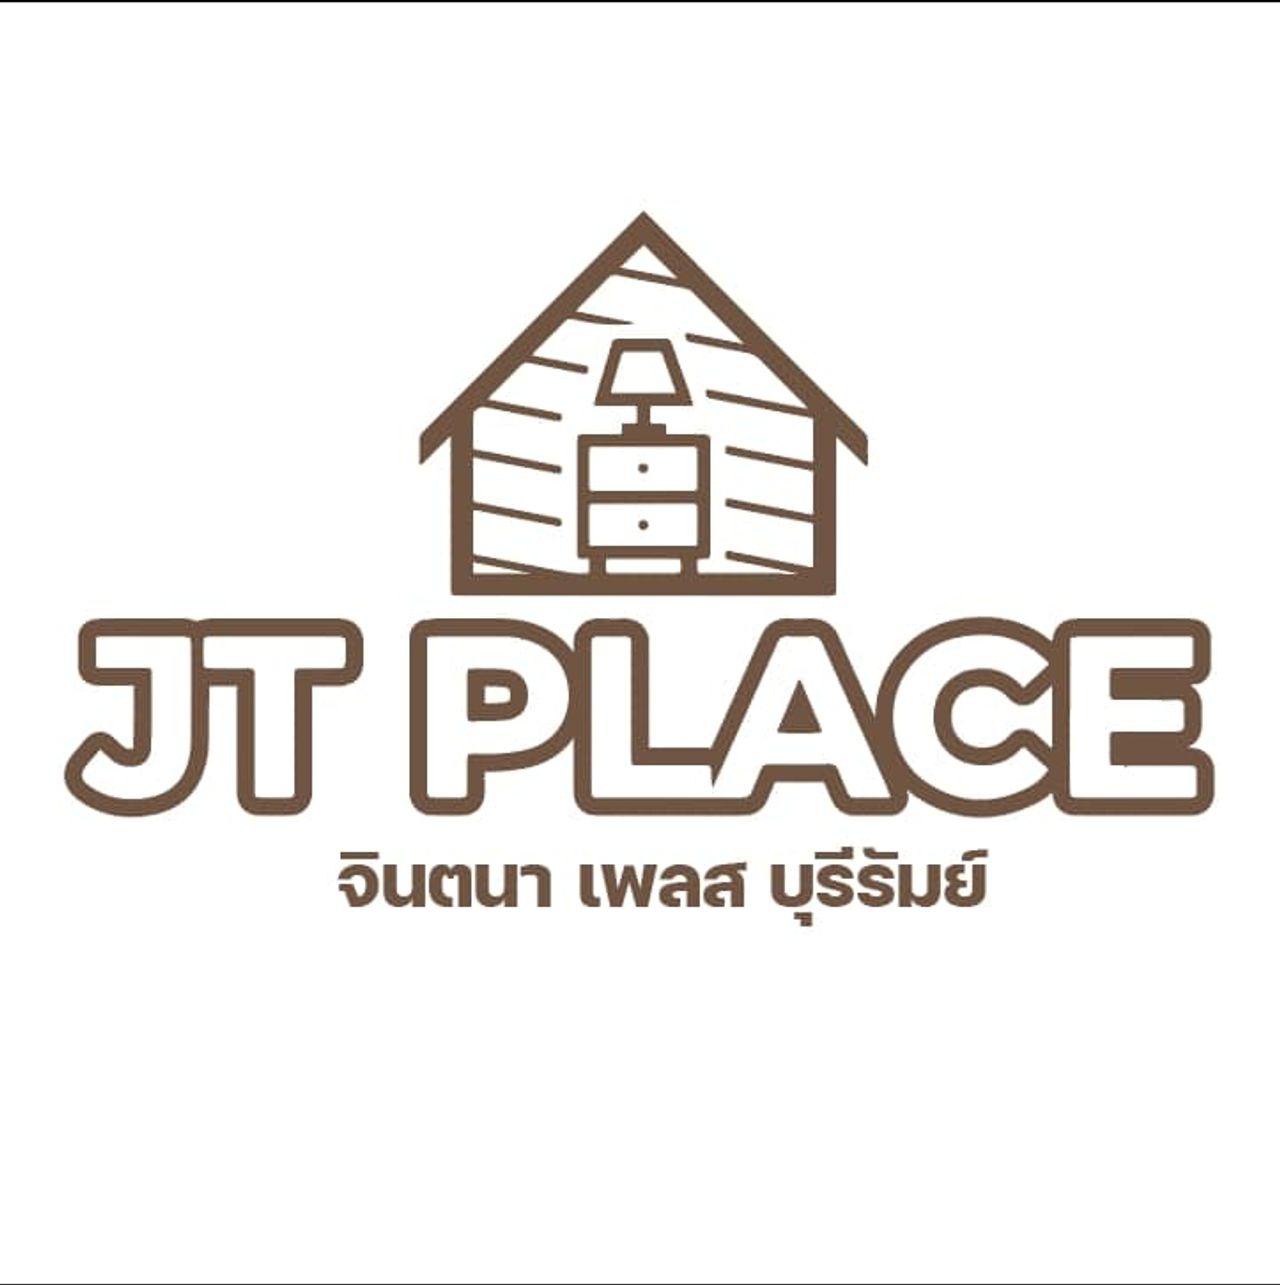 รูปภาพเพิ่มเติม จินตนาเพลส - JT-Place-Buriram - ลำดับที่ 4